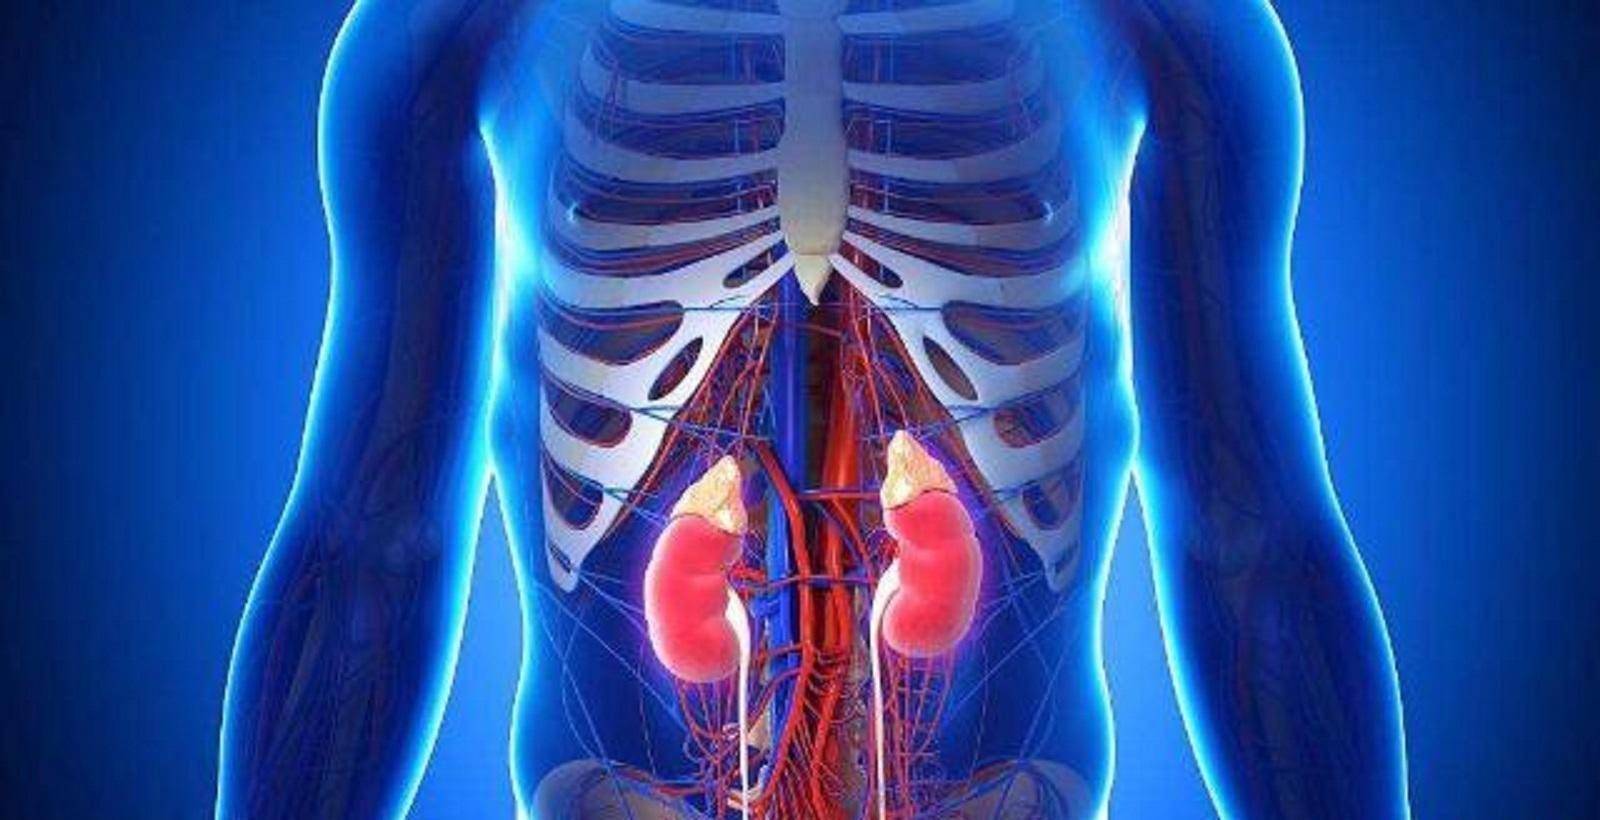 肝和肾位置示意图图片